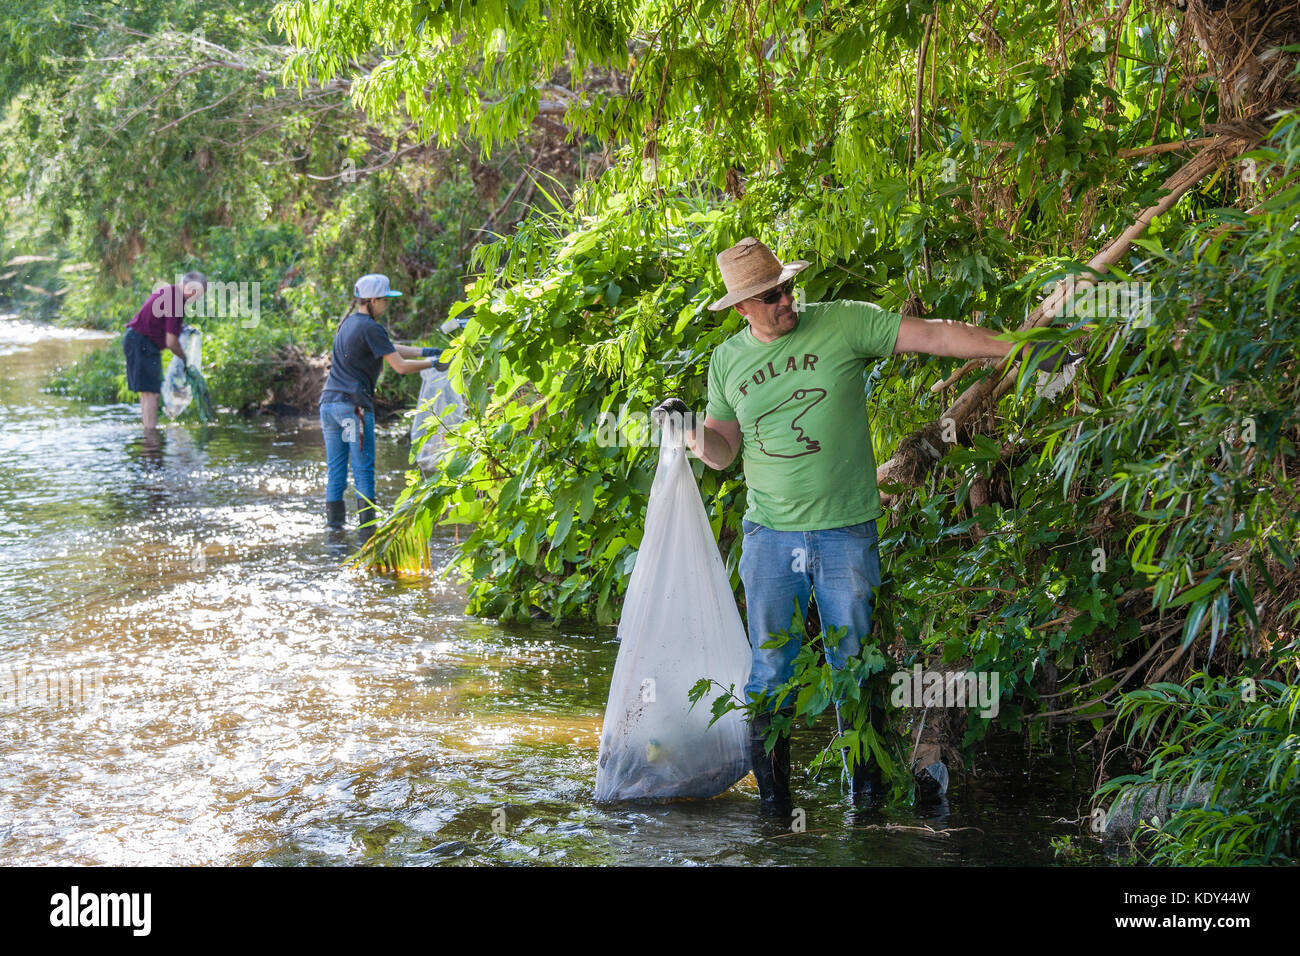 La gran limpieza, fiume folar clean-up, 11 aprile 2015, il fiume di los angeles, glendale si restringe, Los Angeles, california, Stati Uniti d'America Foto Stock